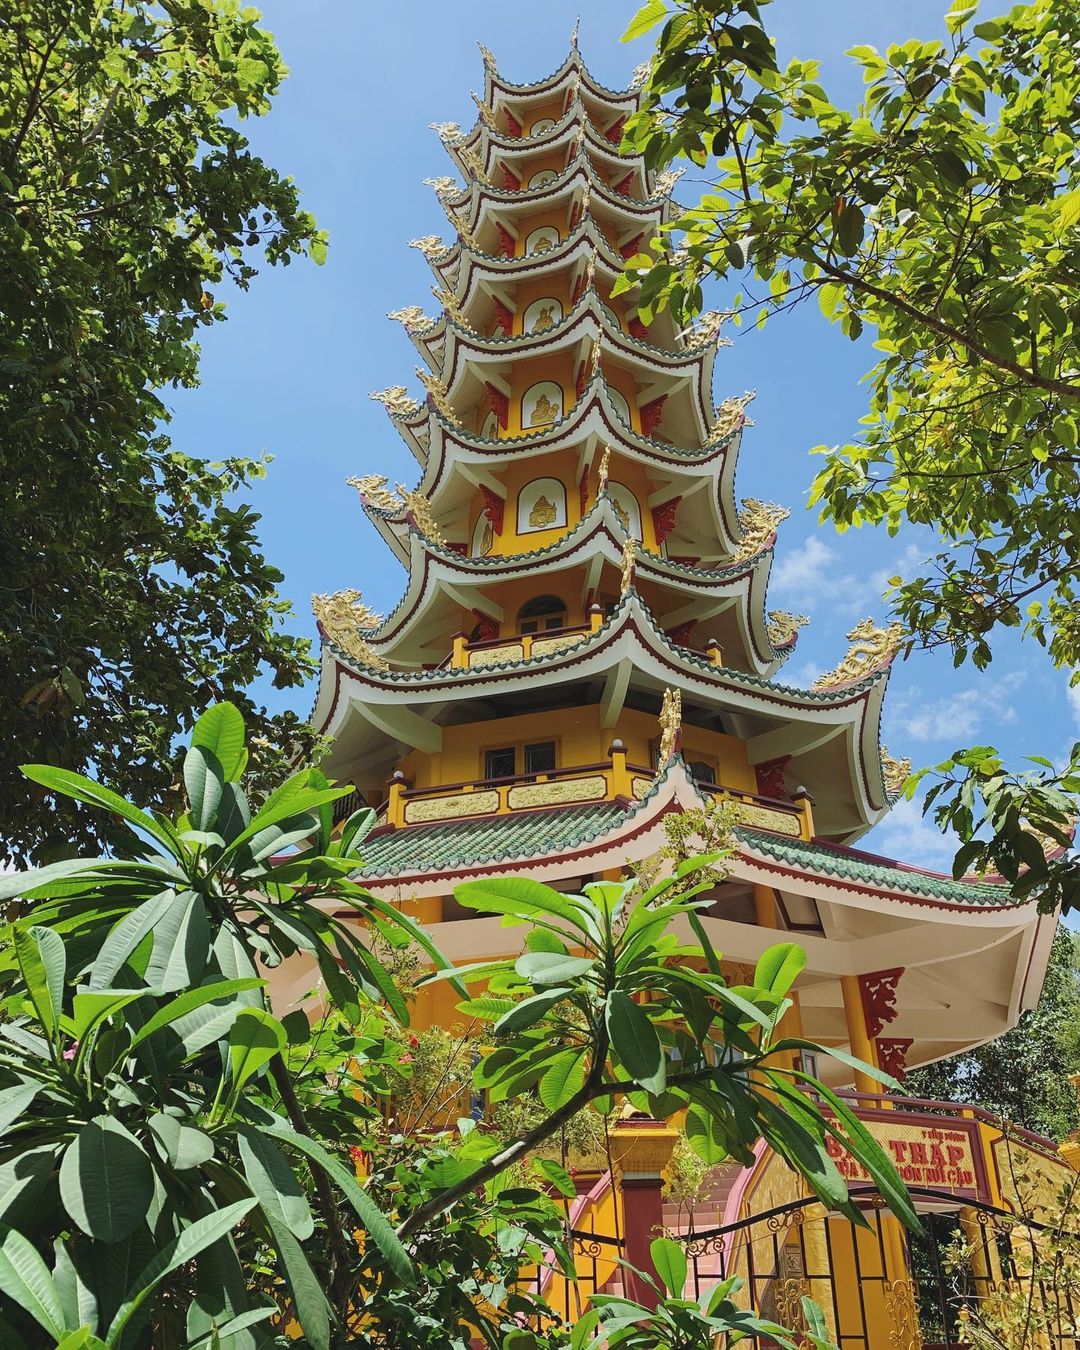 Vãn cảnh Chùa Thái Sơn núi Cậu với kiến trúc phương Đông đặc sắc 7